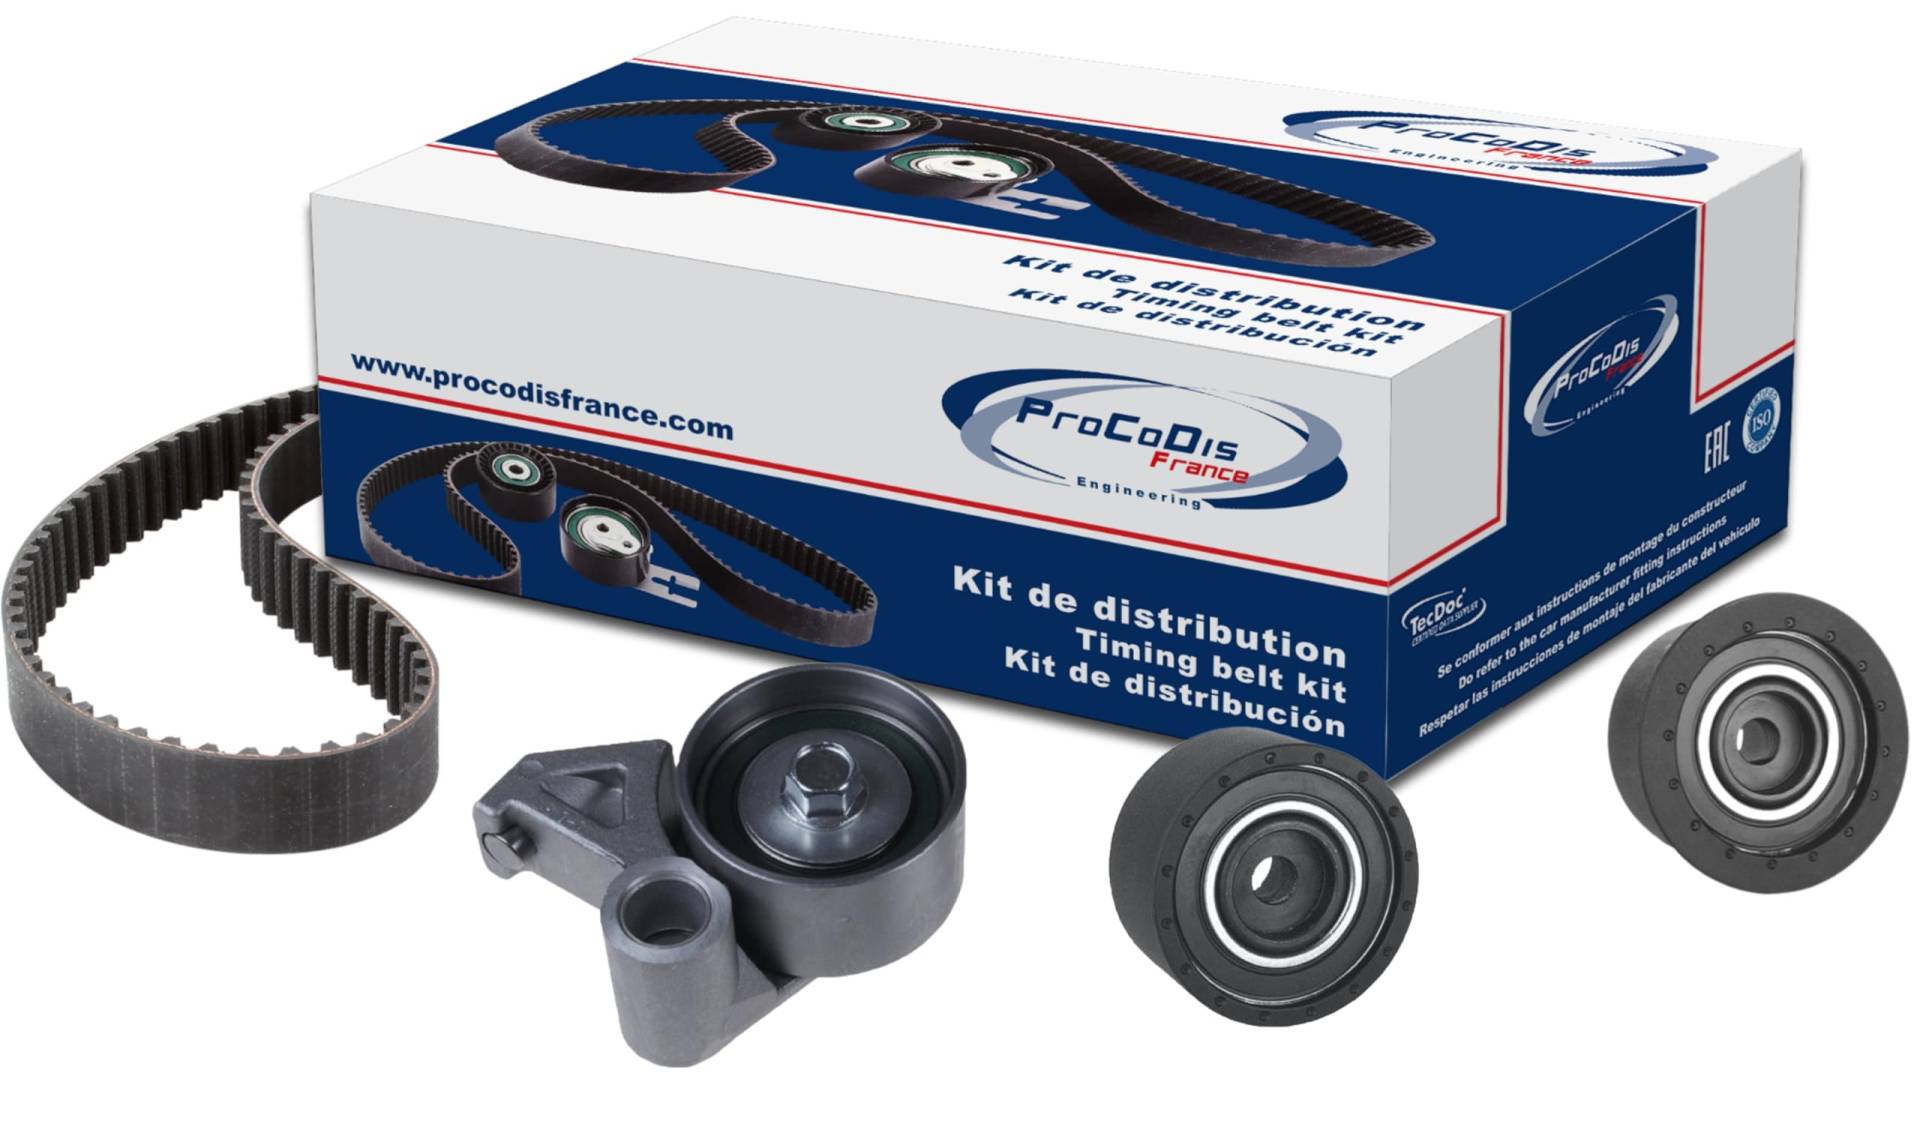 Procodis KTD9710 Verteiler-Kit von Procodis France